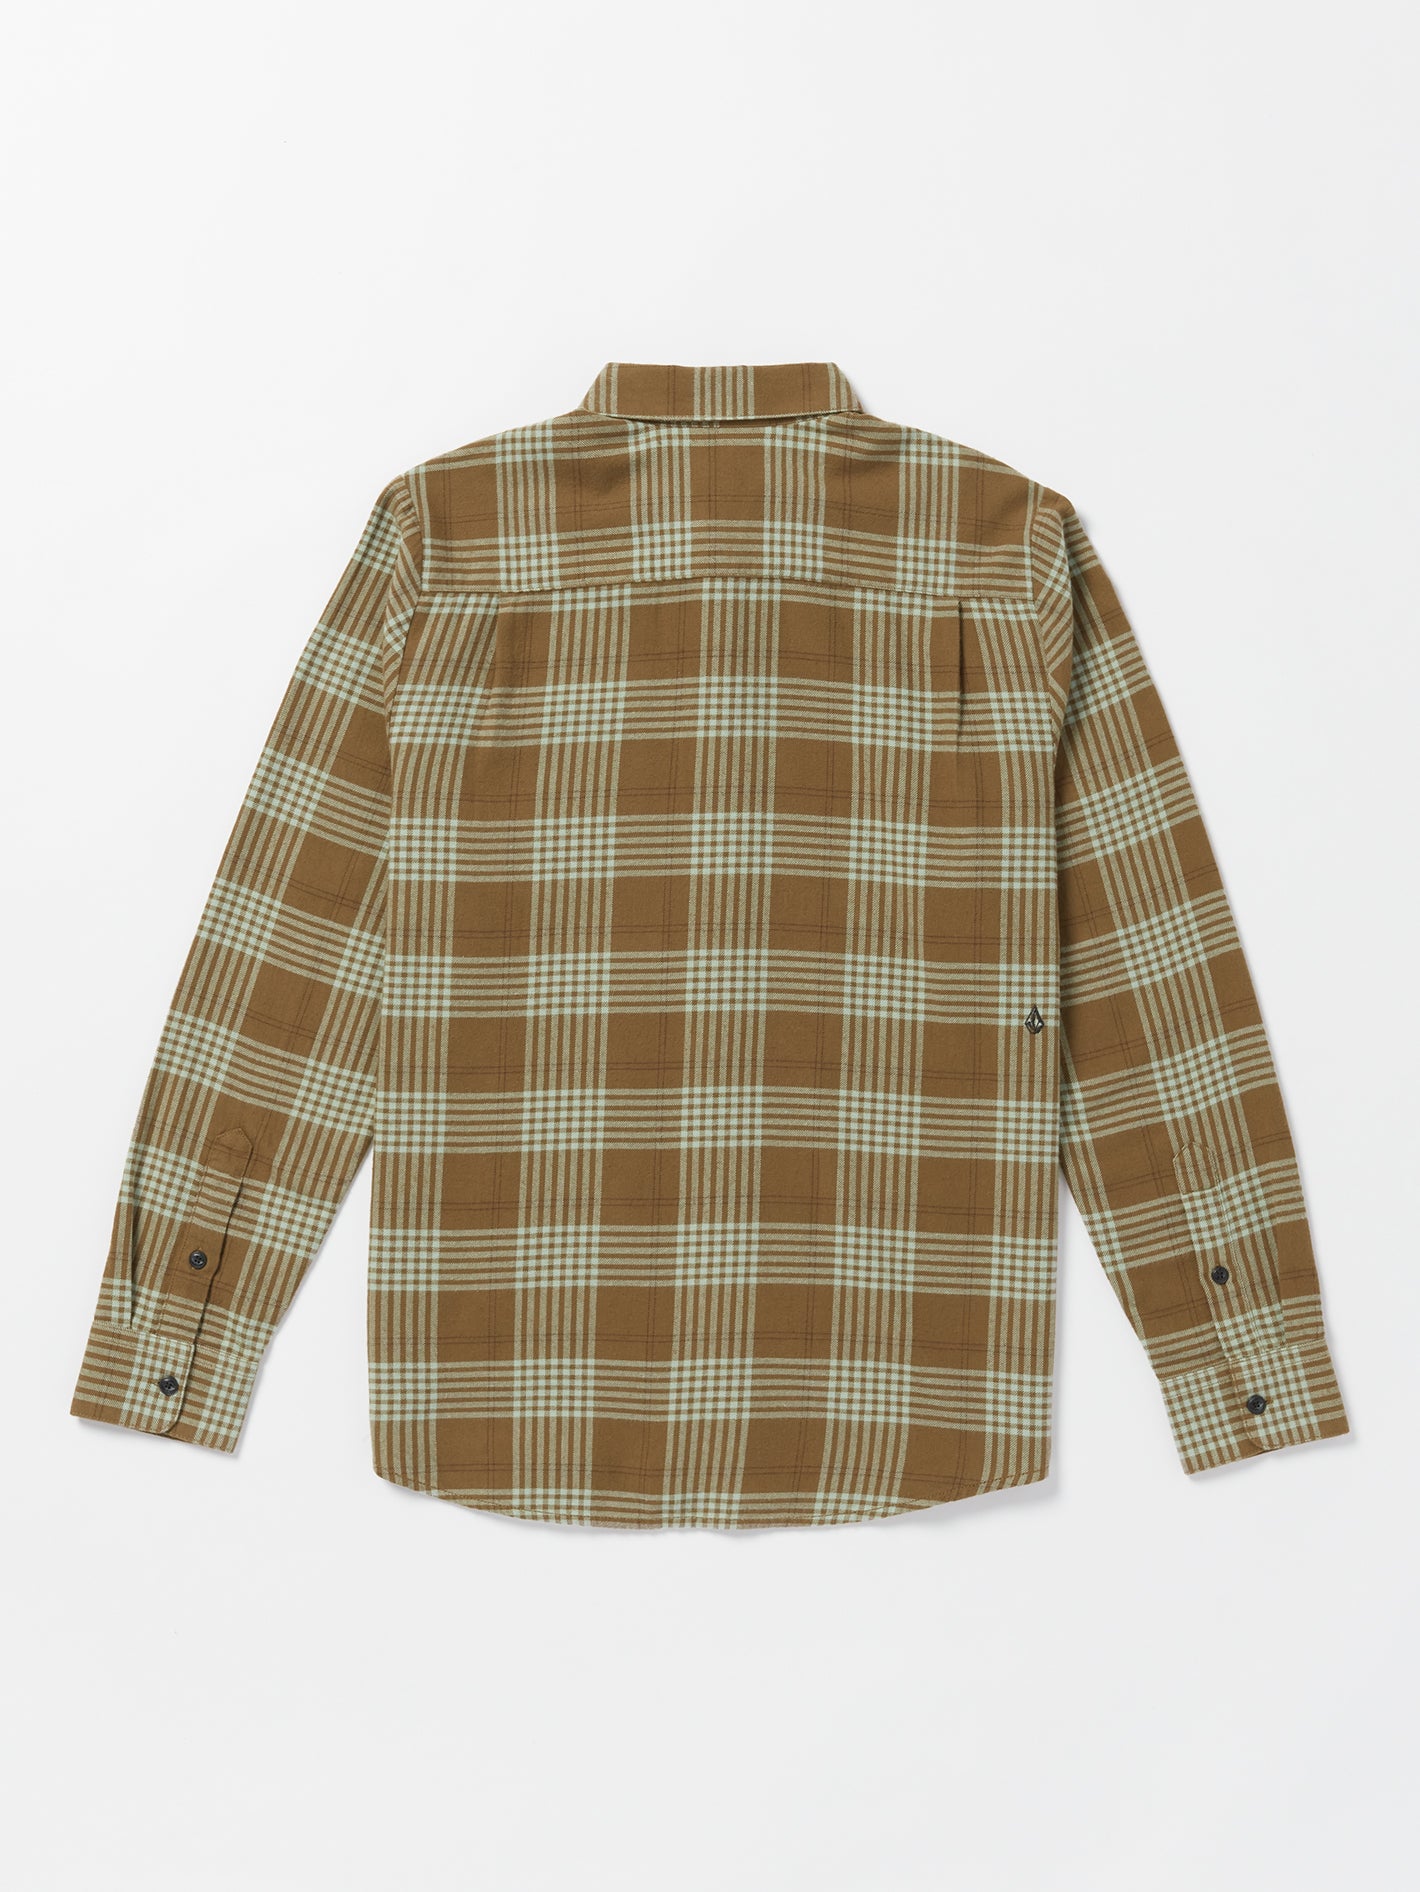 Caden Plaid Long Sleeve Shirt - Mud – Volcom Japan